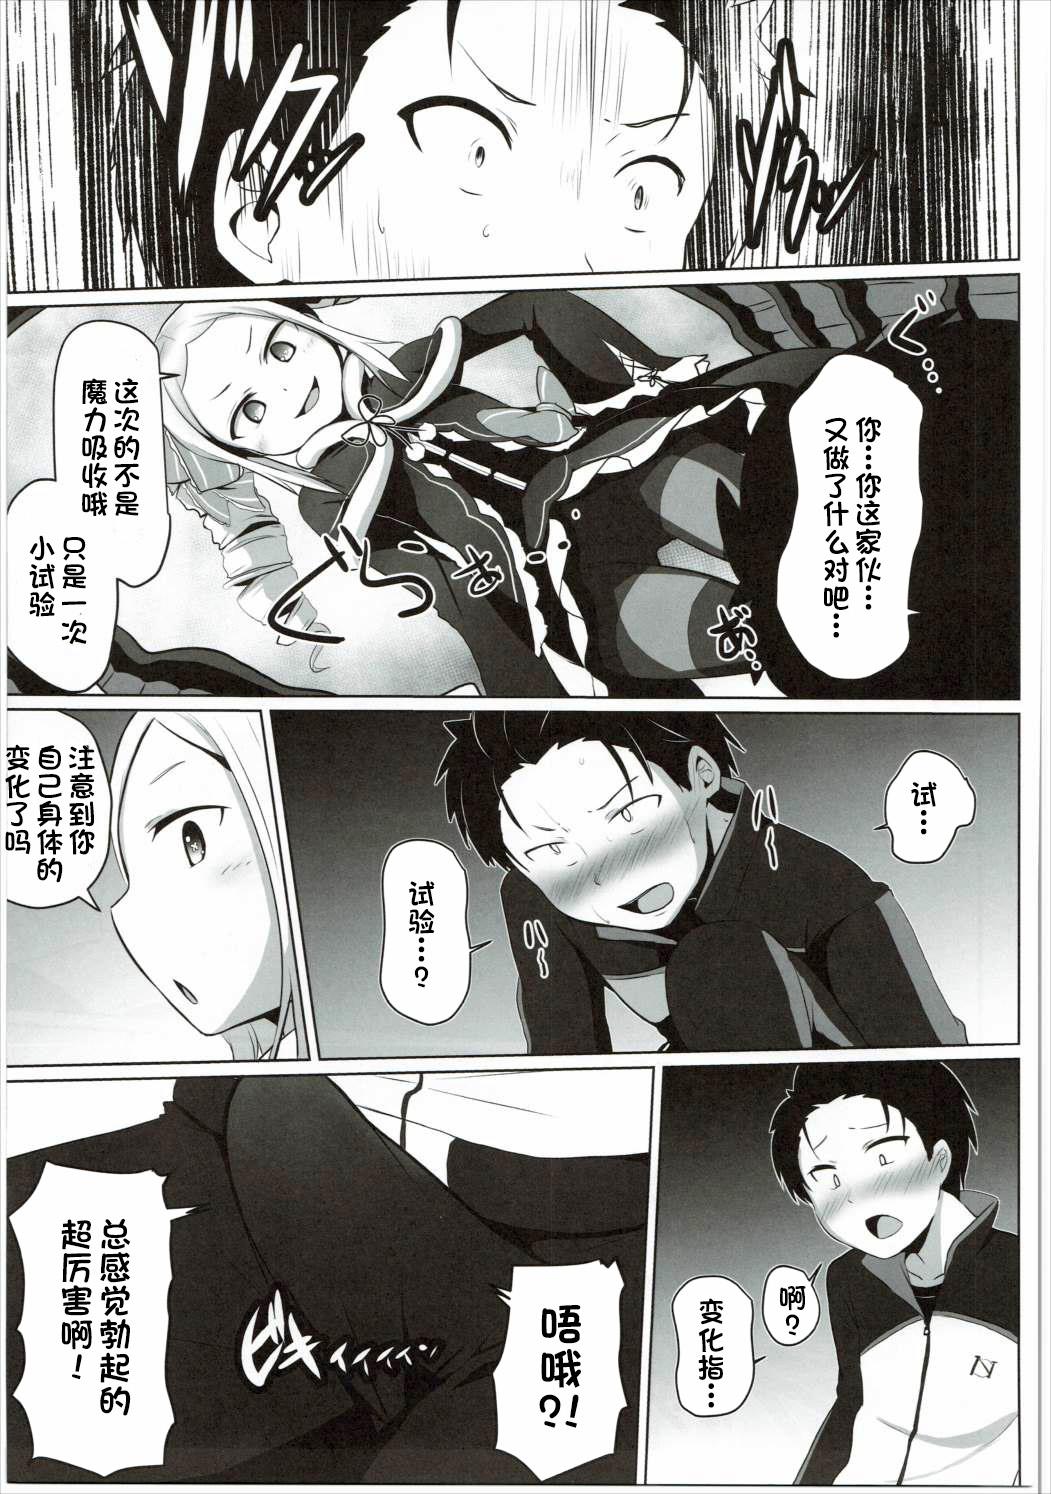 Little Omae Namaiki kashira!! - Re zero kara hajimeru isekai seikatsu Students - Page 4